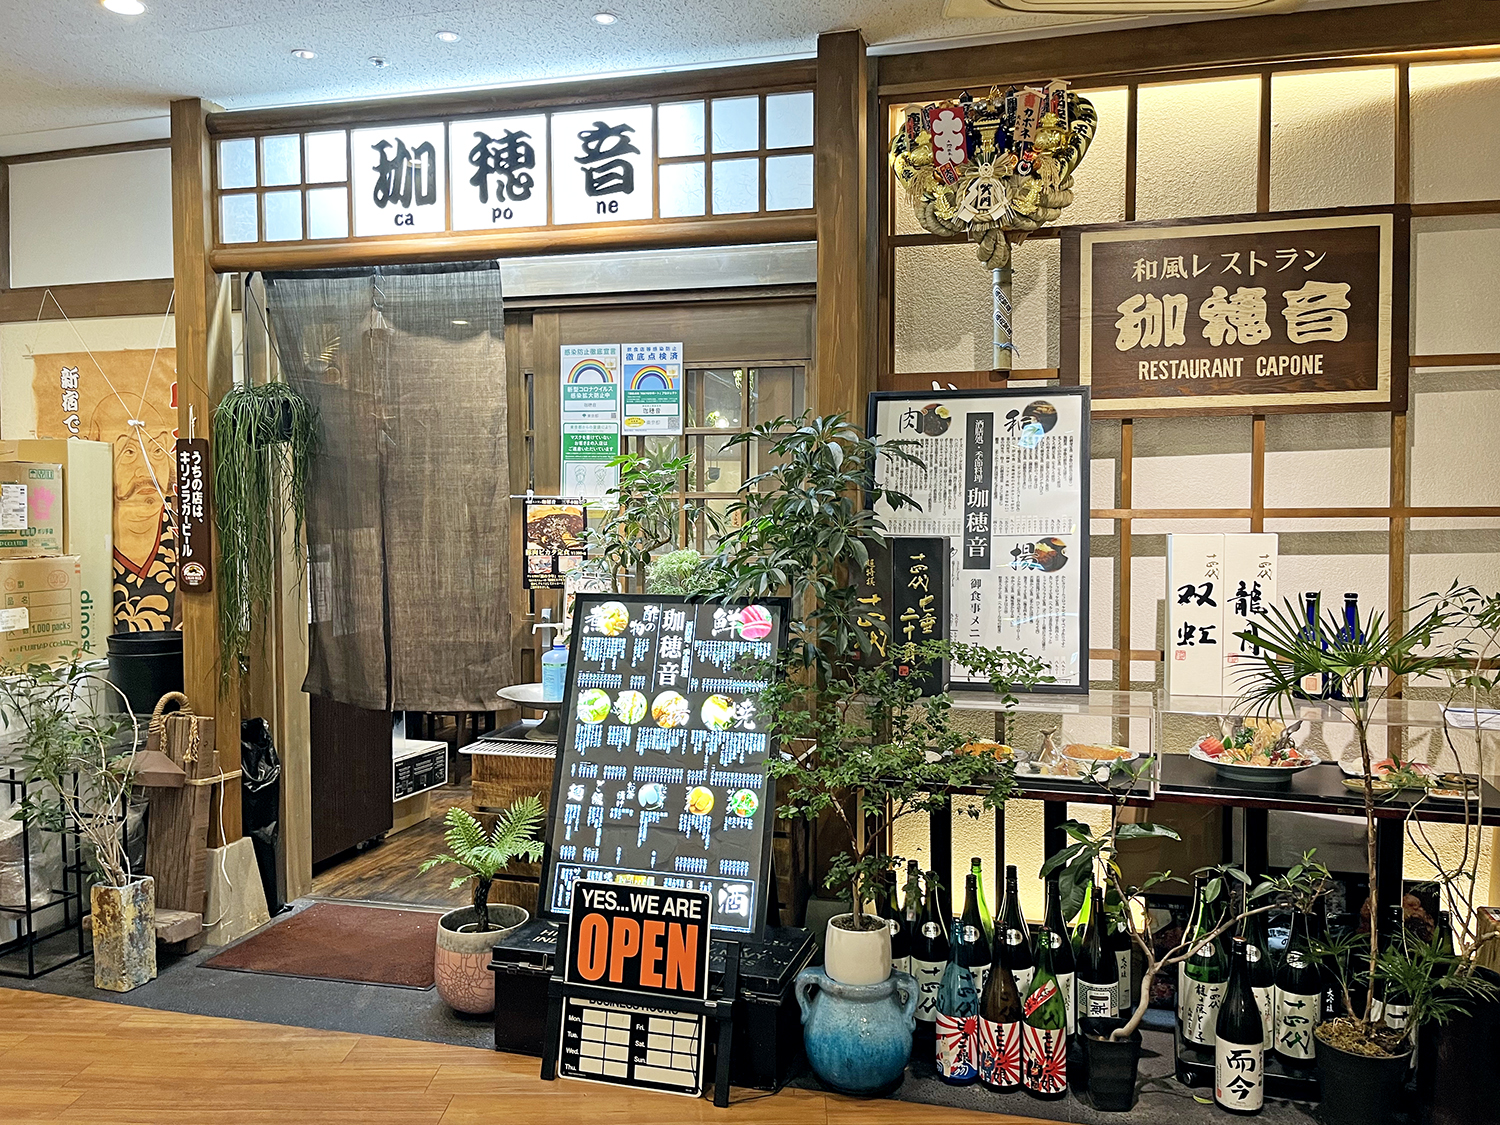 現在の店舗。自慢の日本酒が並び、いろんな植木があったりしてアットホームな雰囲気。おいしいものがいただけそう！